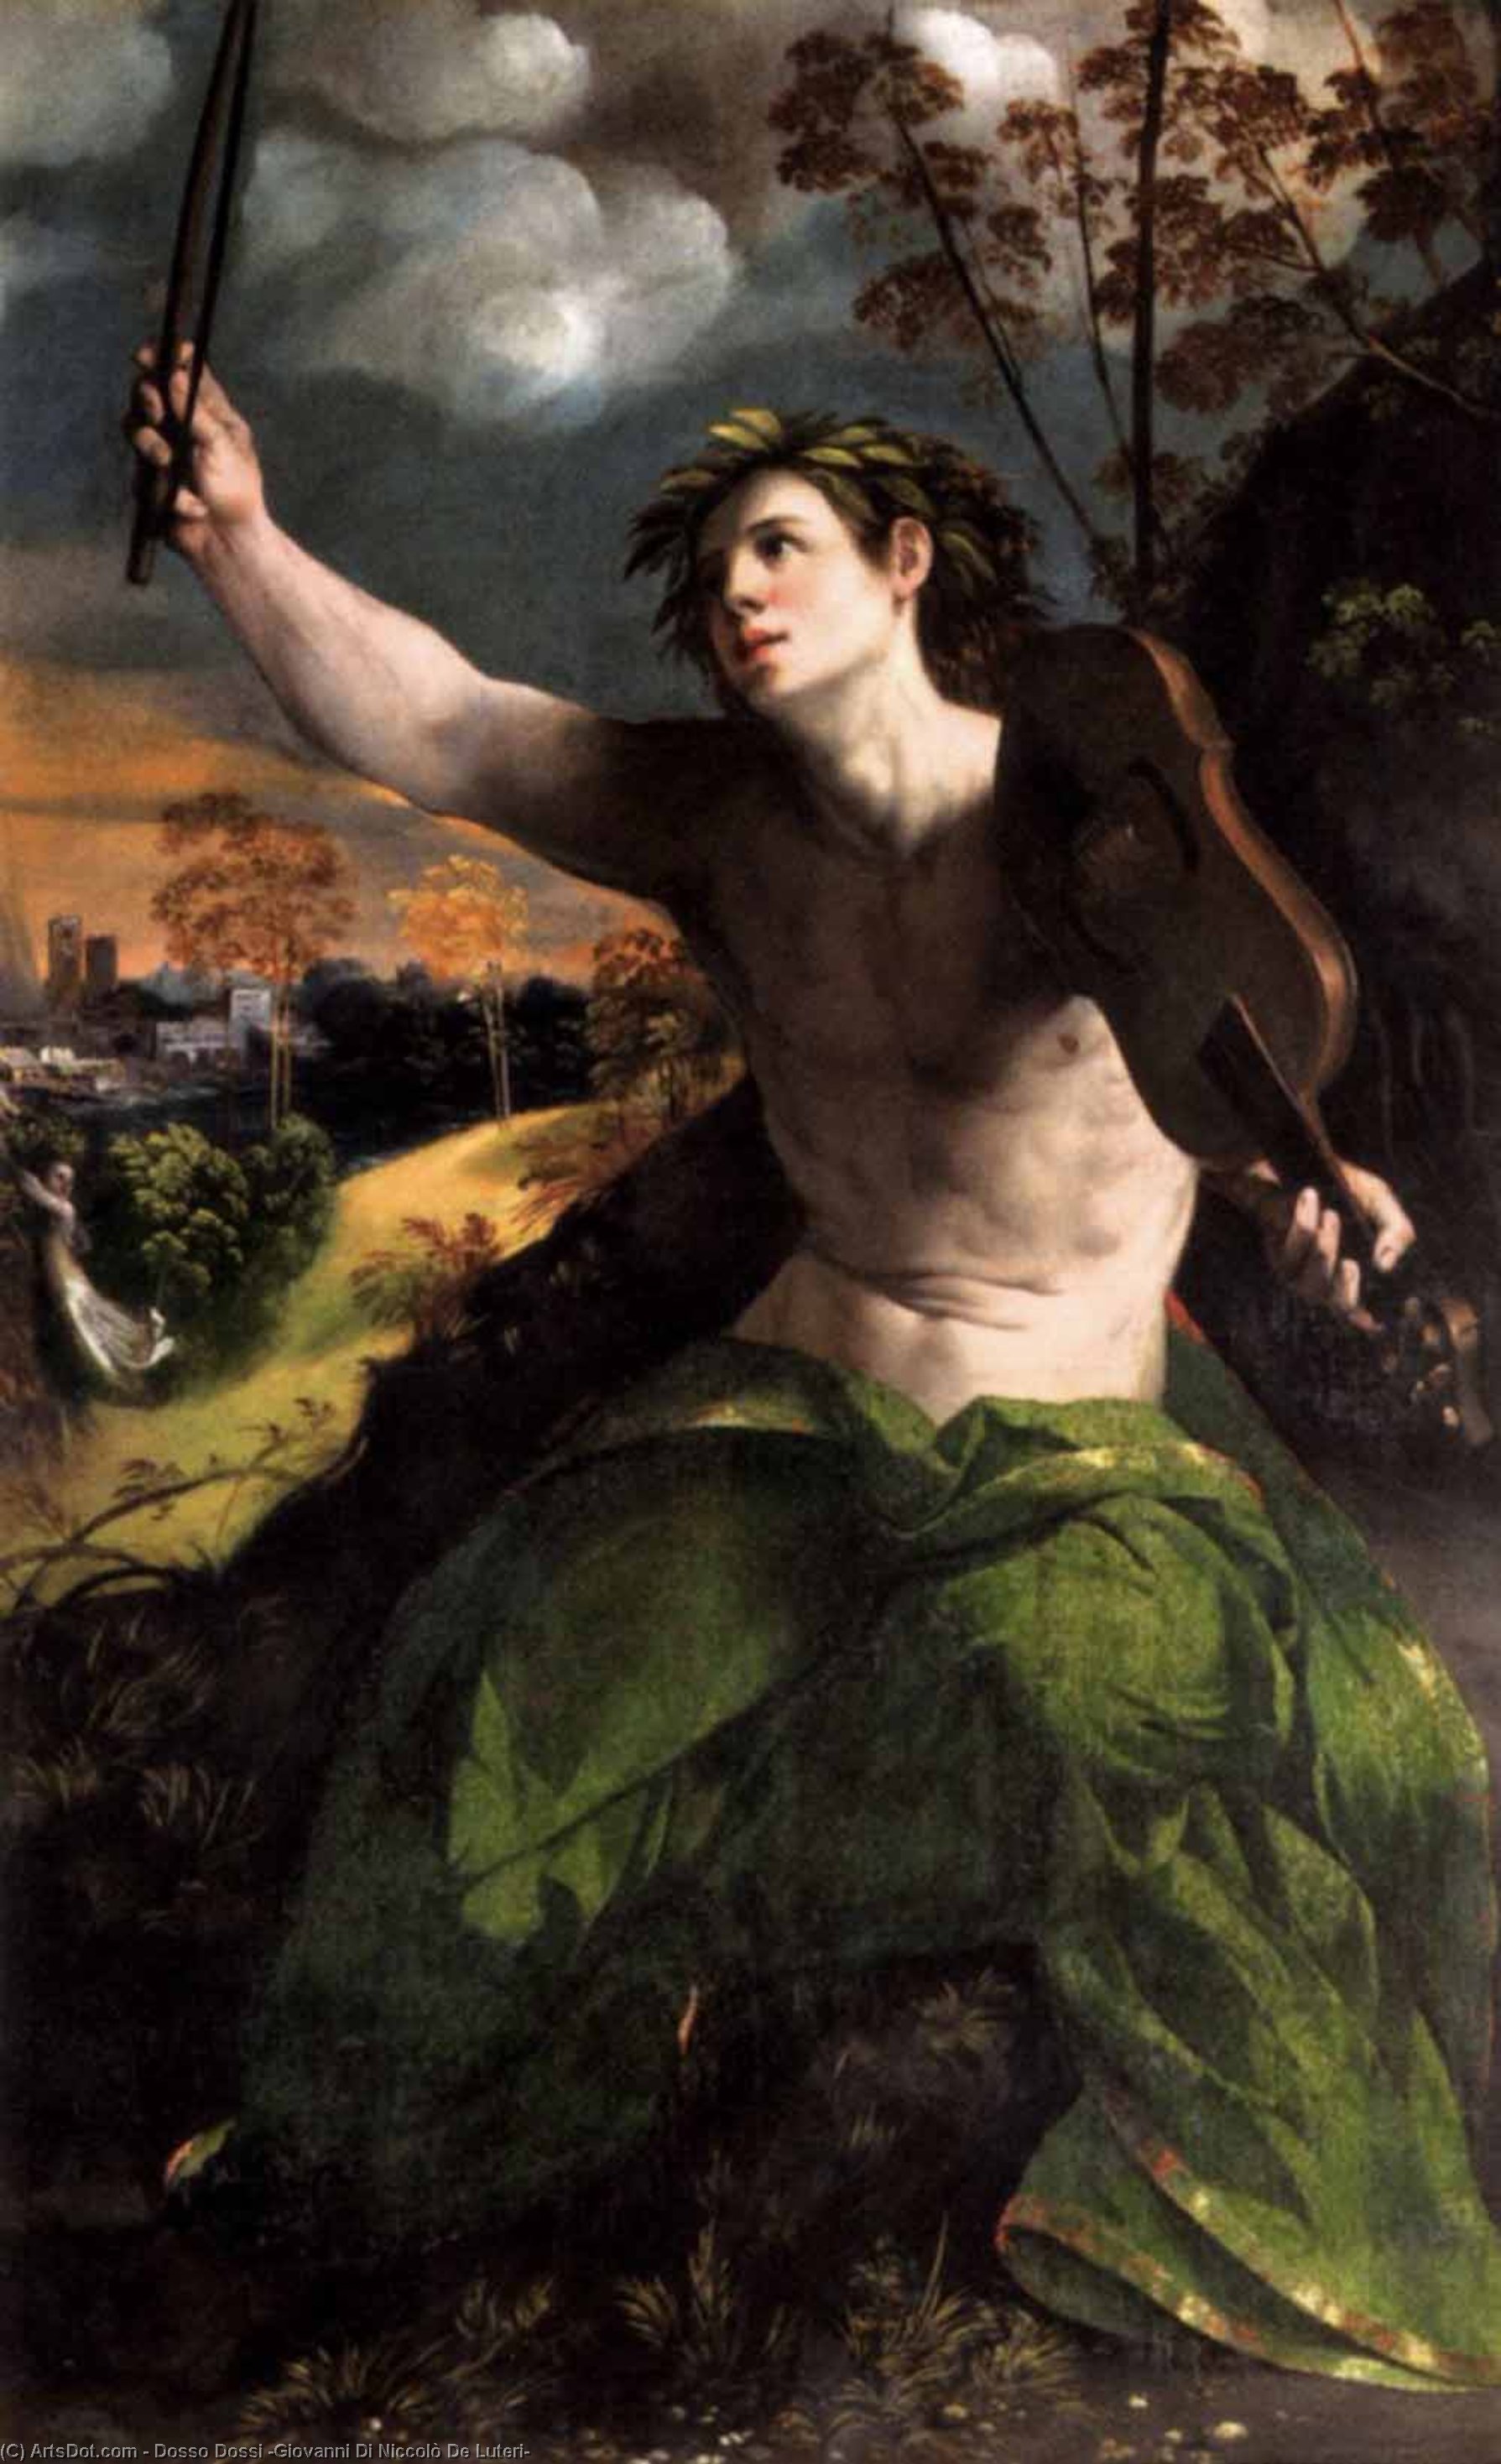 Wikioo.org - The Encyclopedia of Fine Arts - Painting, Artwork by Dosso Dossi (Giovanni Di Niccolò De Luteri) - Apollo